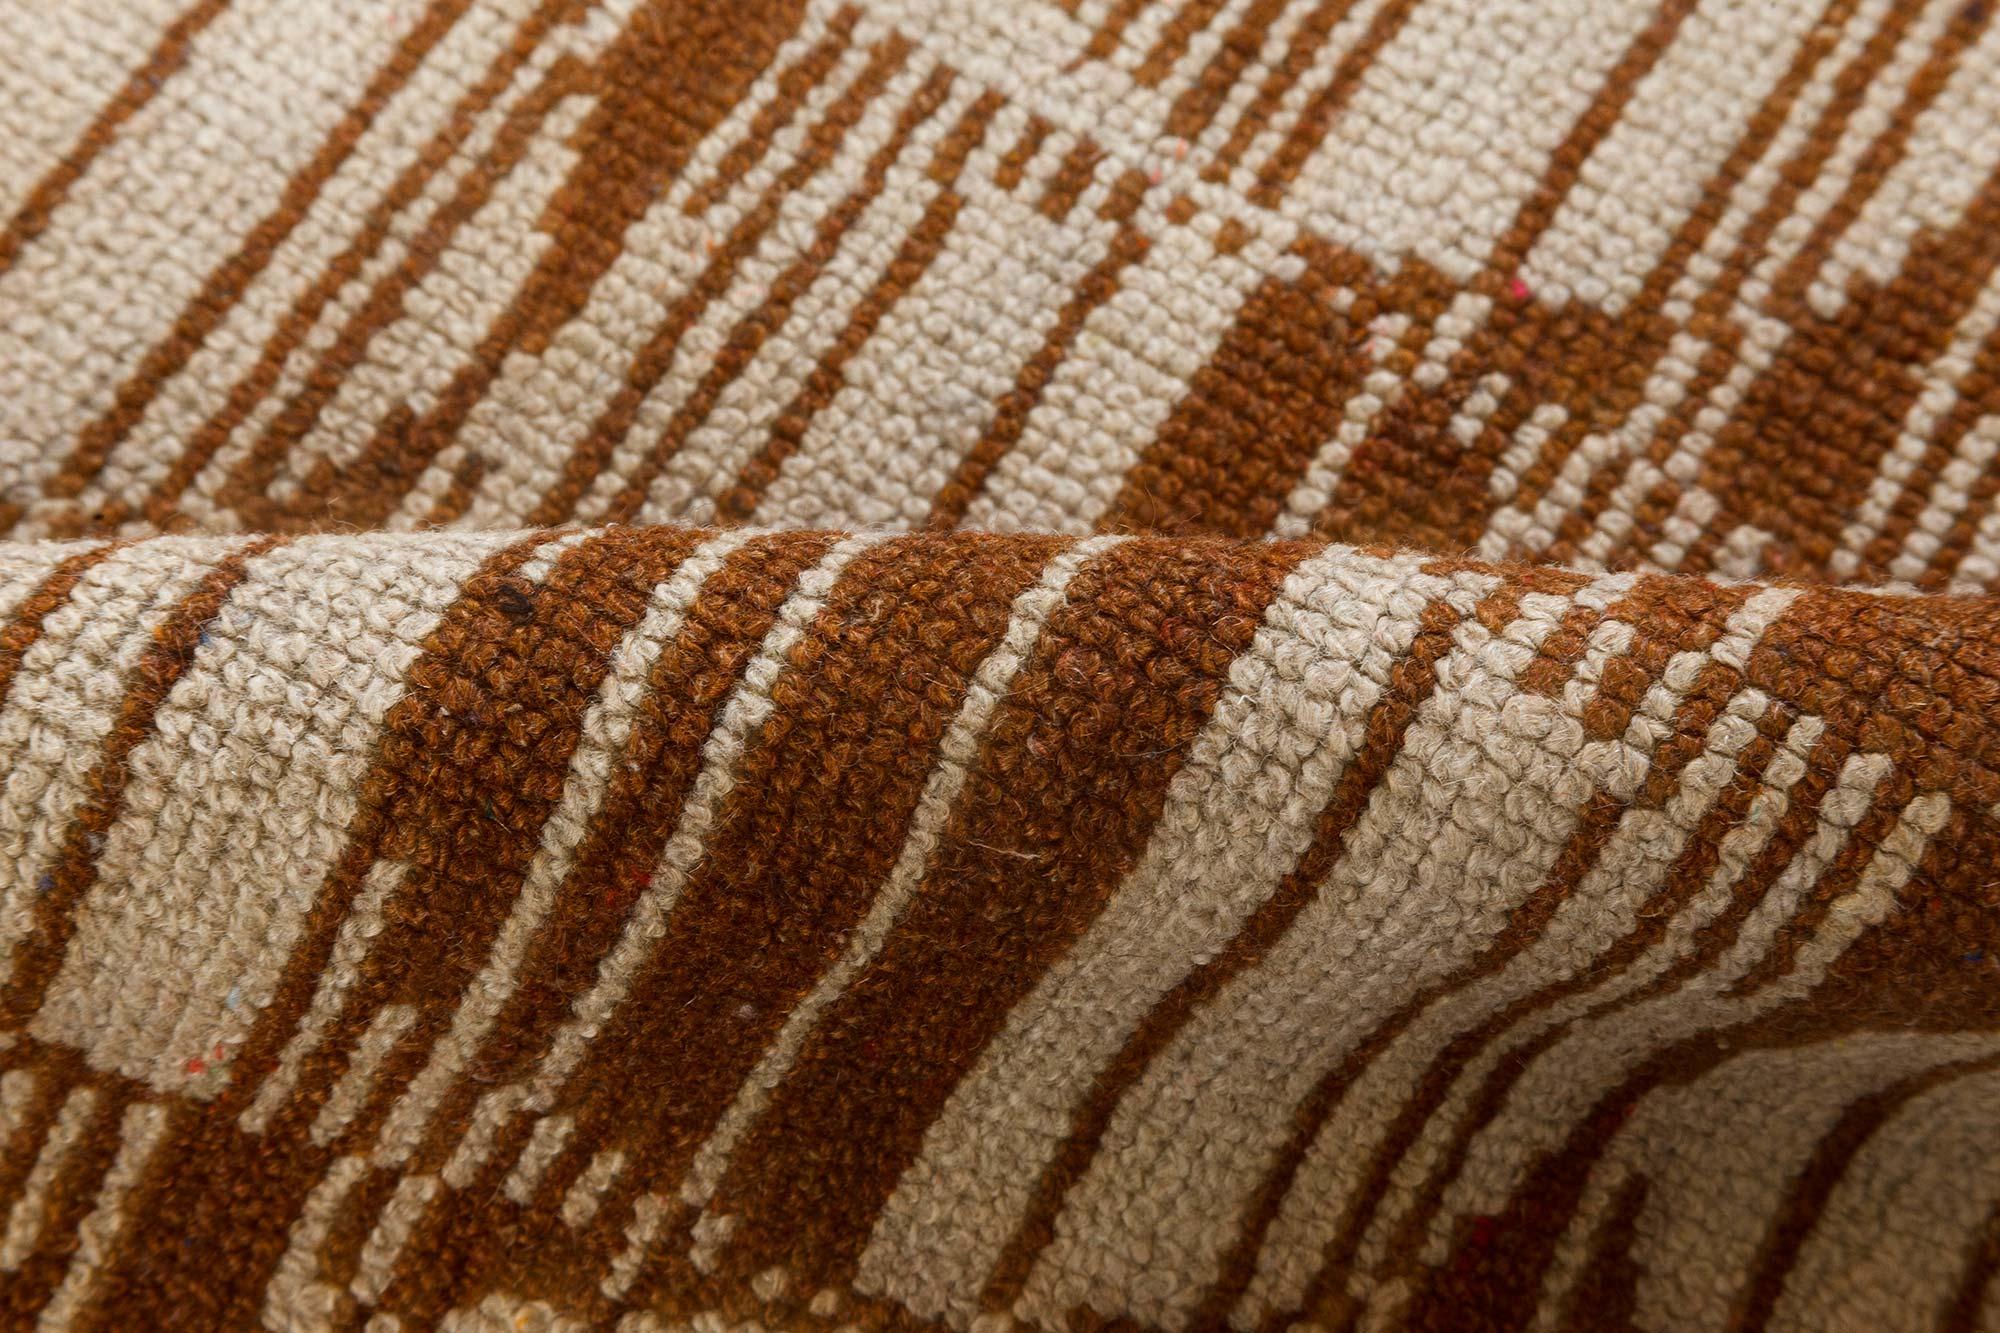 Vintage Art Deco geometric brown, beige handmade wool carpet
Size: 5'4